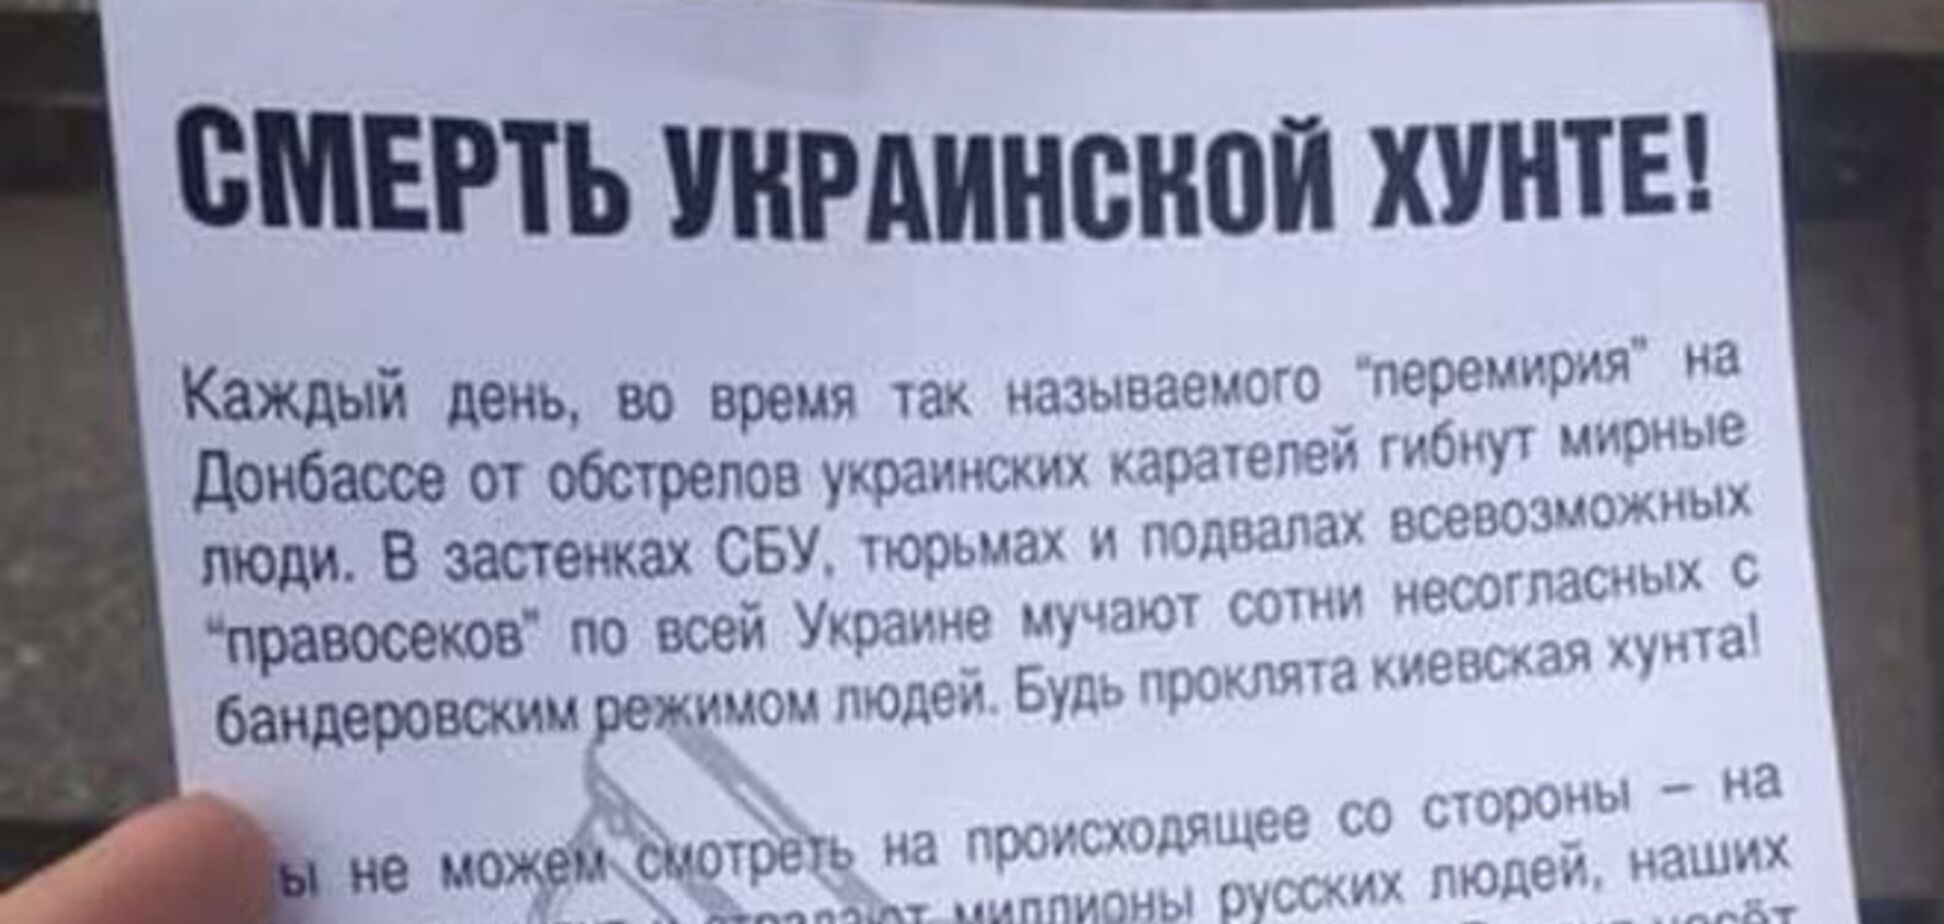 В Москве раздают листовки о 'хунте' и 'правосеках' в Украине. Фотофакт